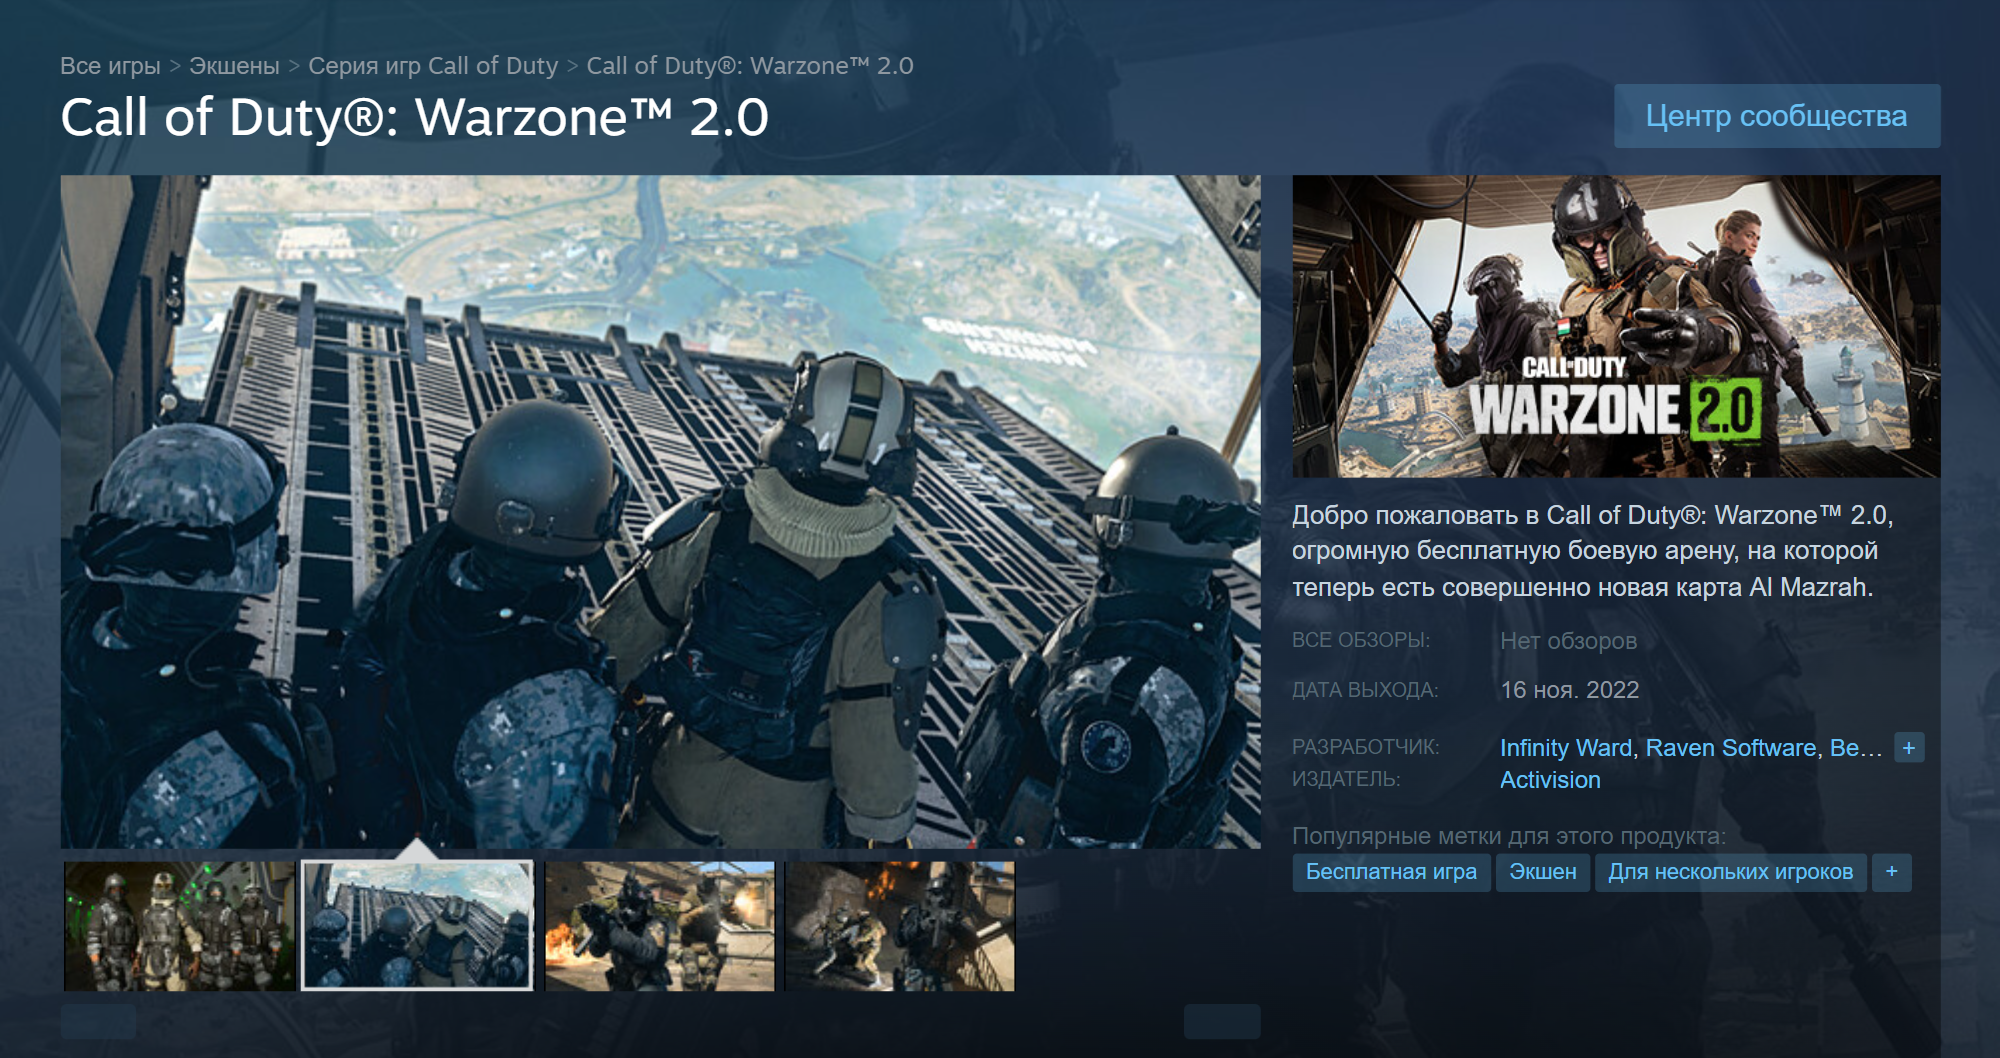 Warzone 2.0 — первая за долгое время игра Activision, вышедшая в российском Steam. Источник: store.steampowered.com